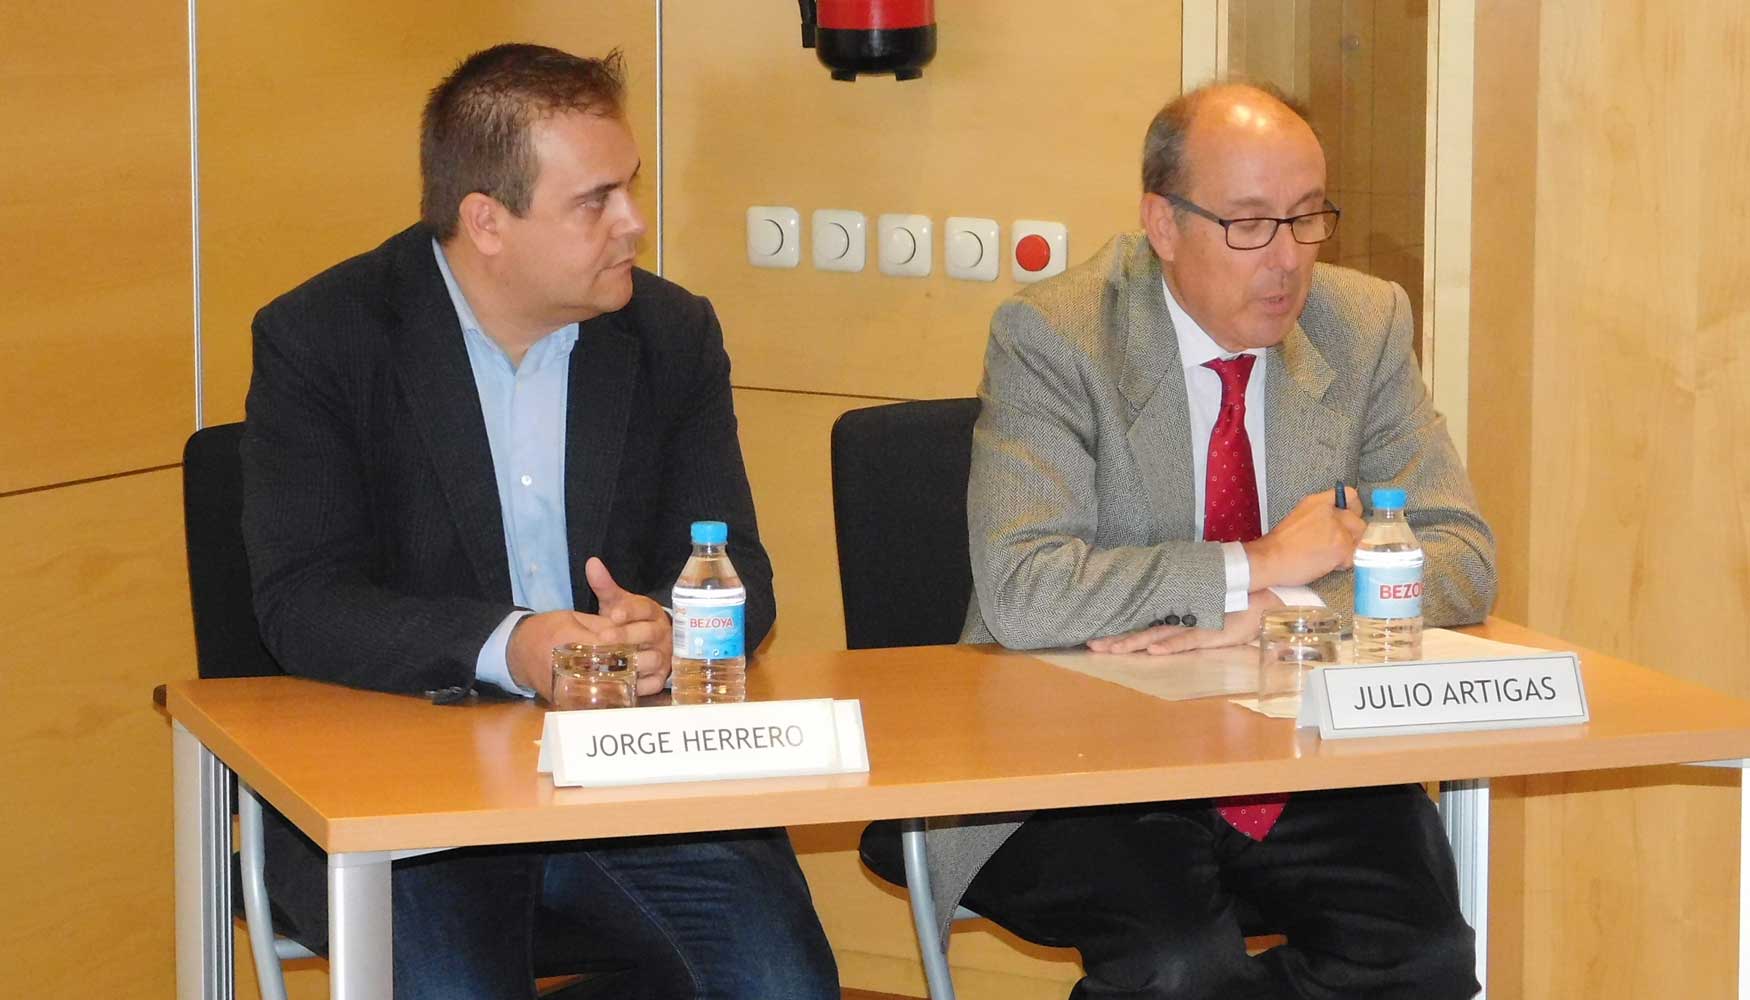 De izquierda a derecha: Jorge Herrero, de Avebiom, y Julio Artigas, jefe de departamento de biomasa y residuos del IDAE